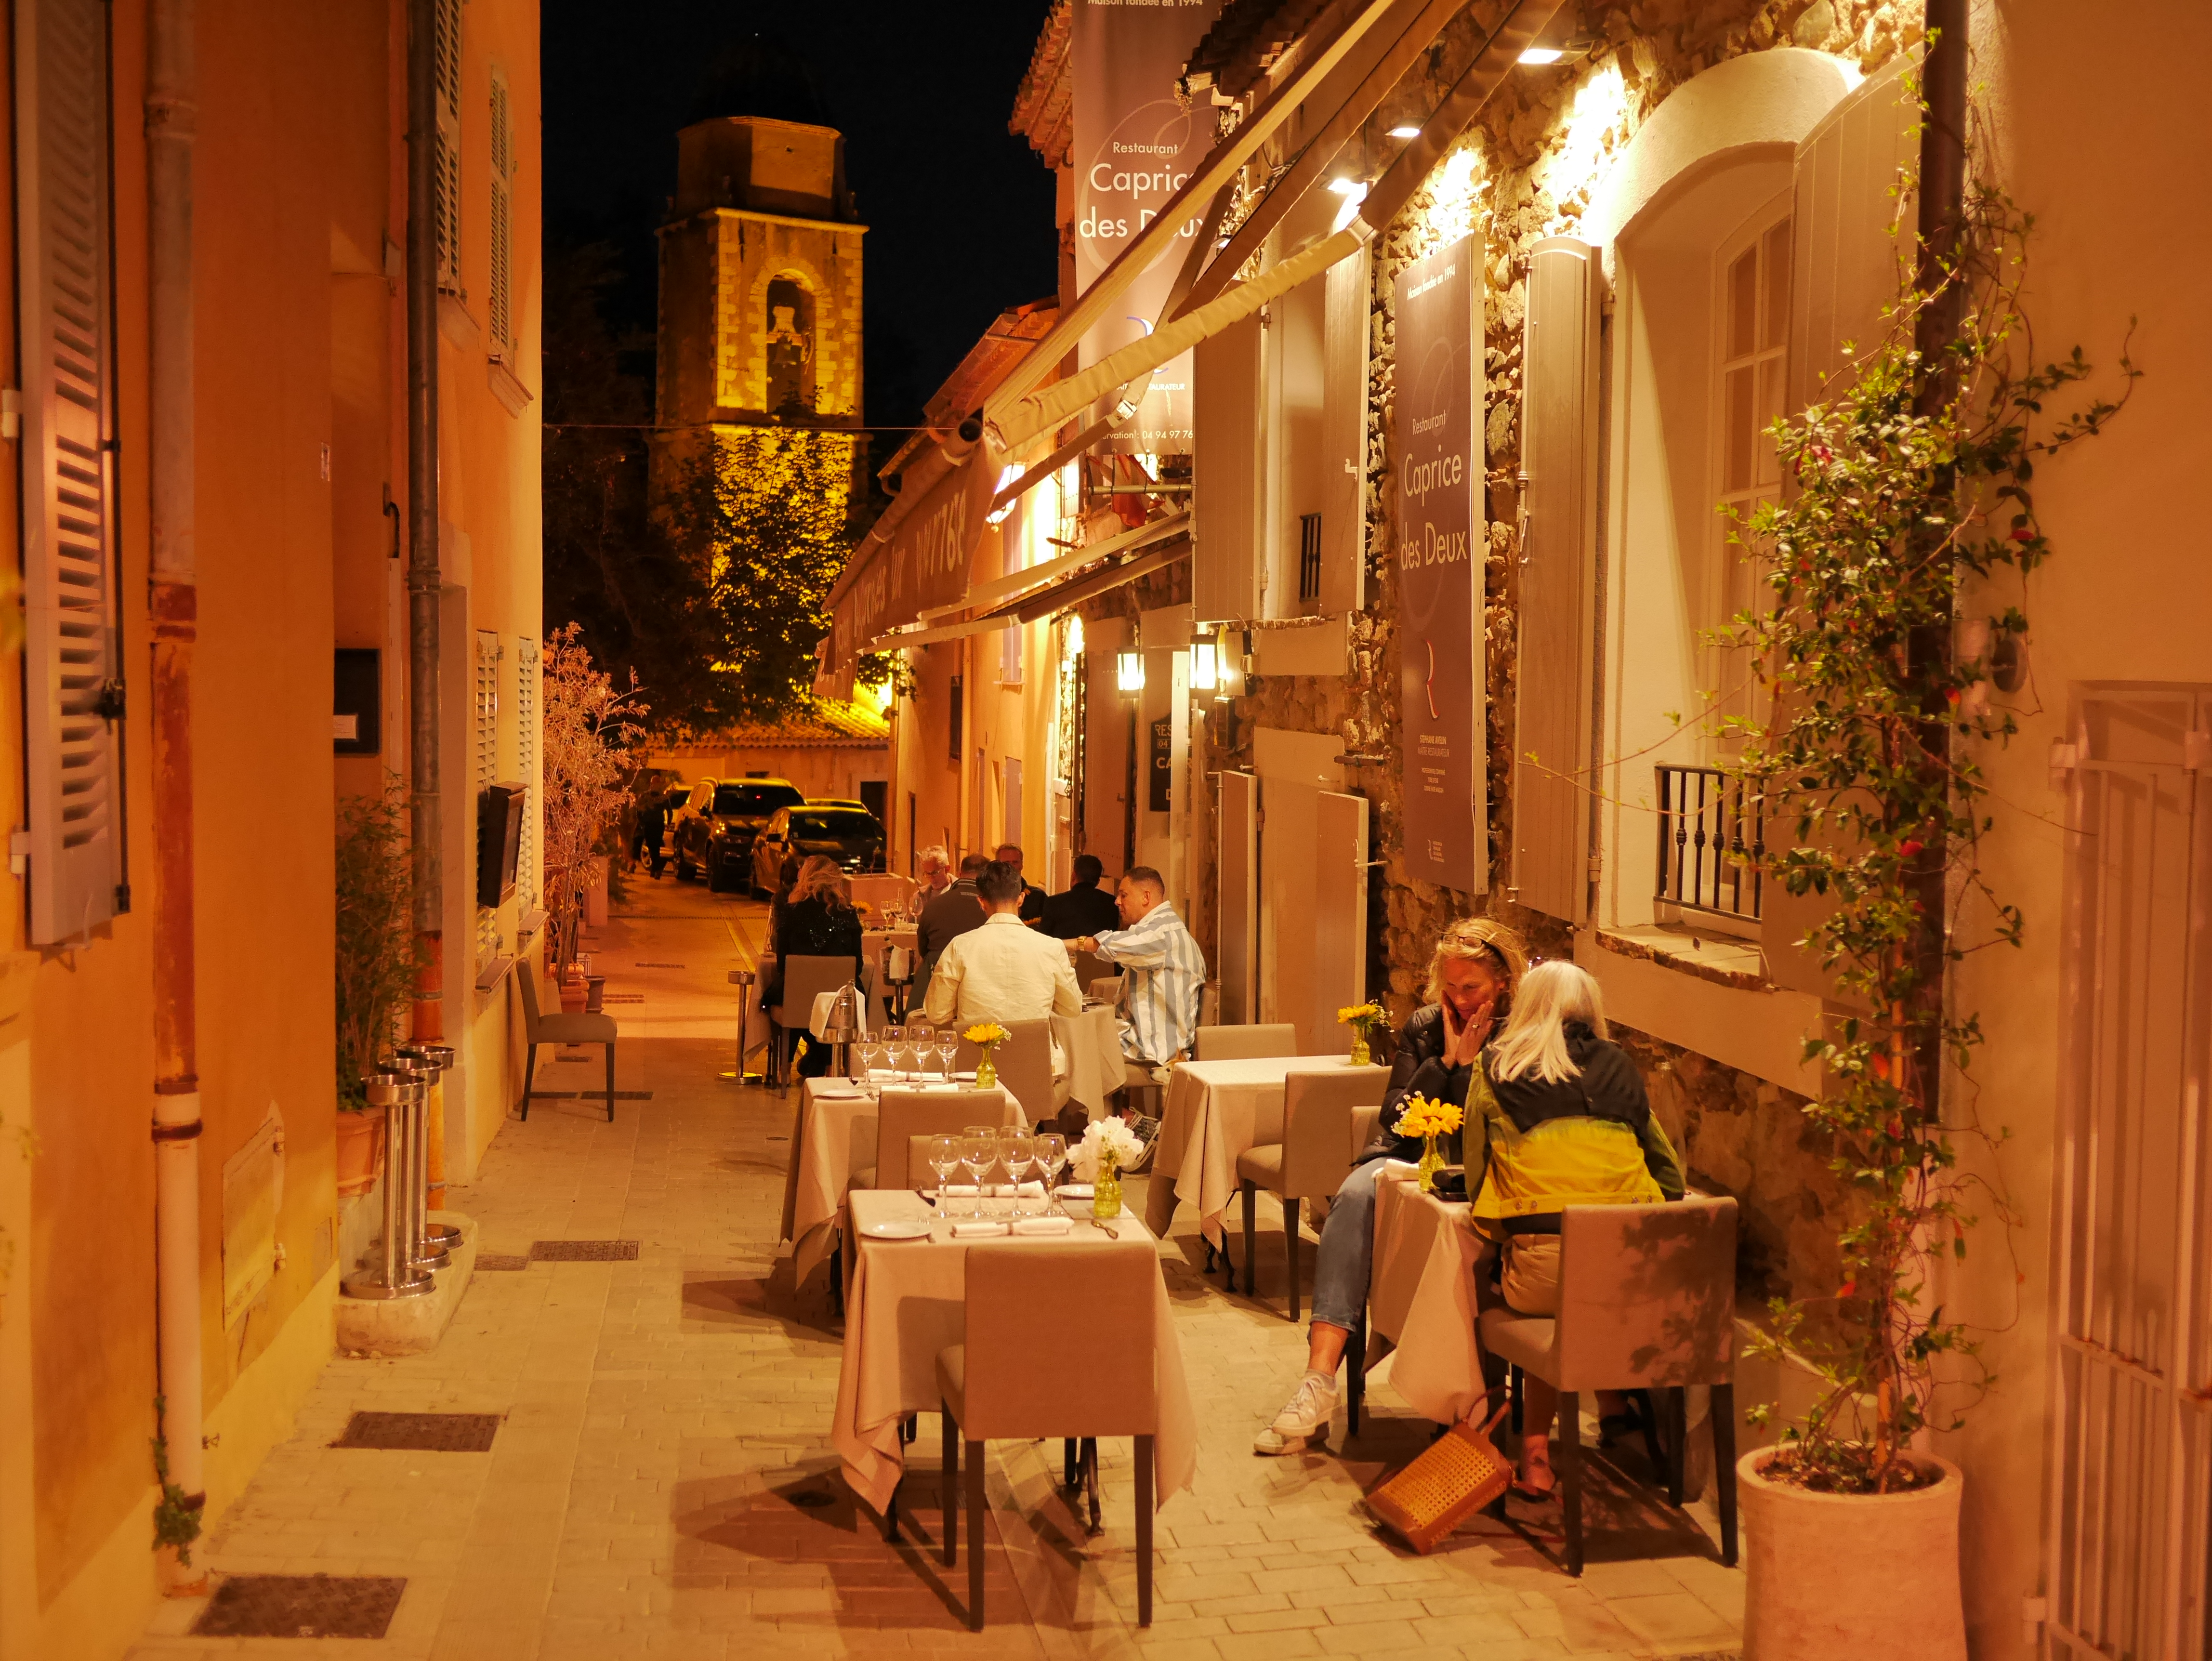 Menu at Au Caprice des Deux restaurant, Saint-Tropez